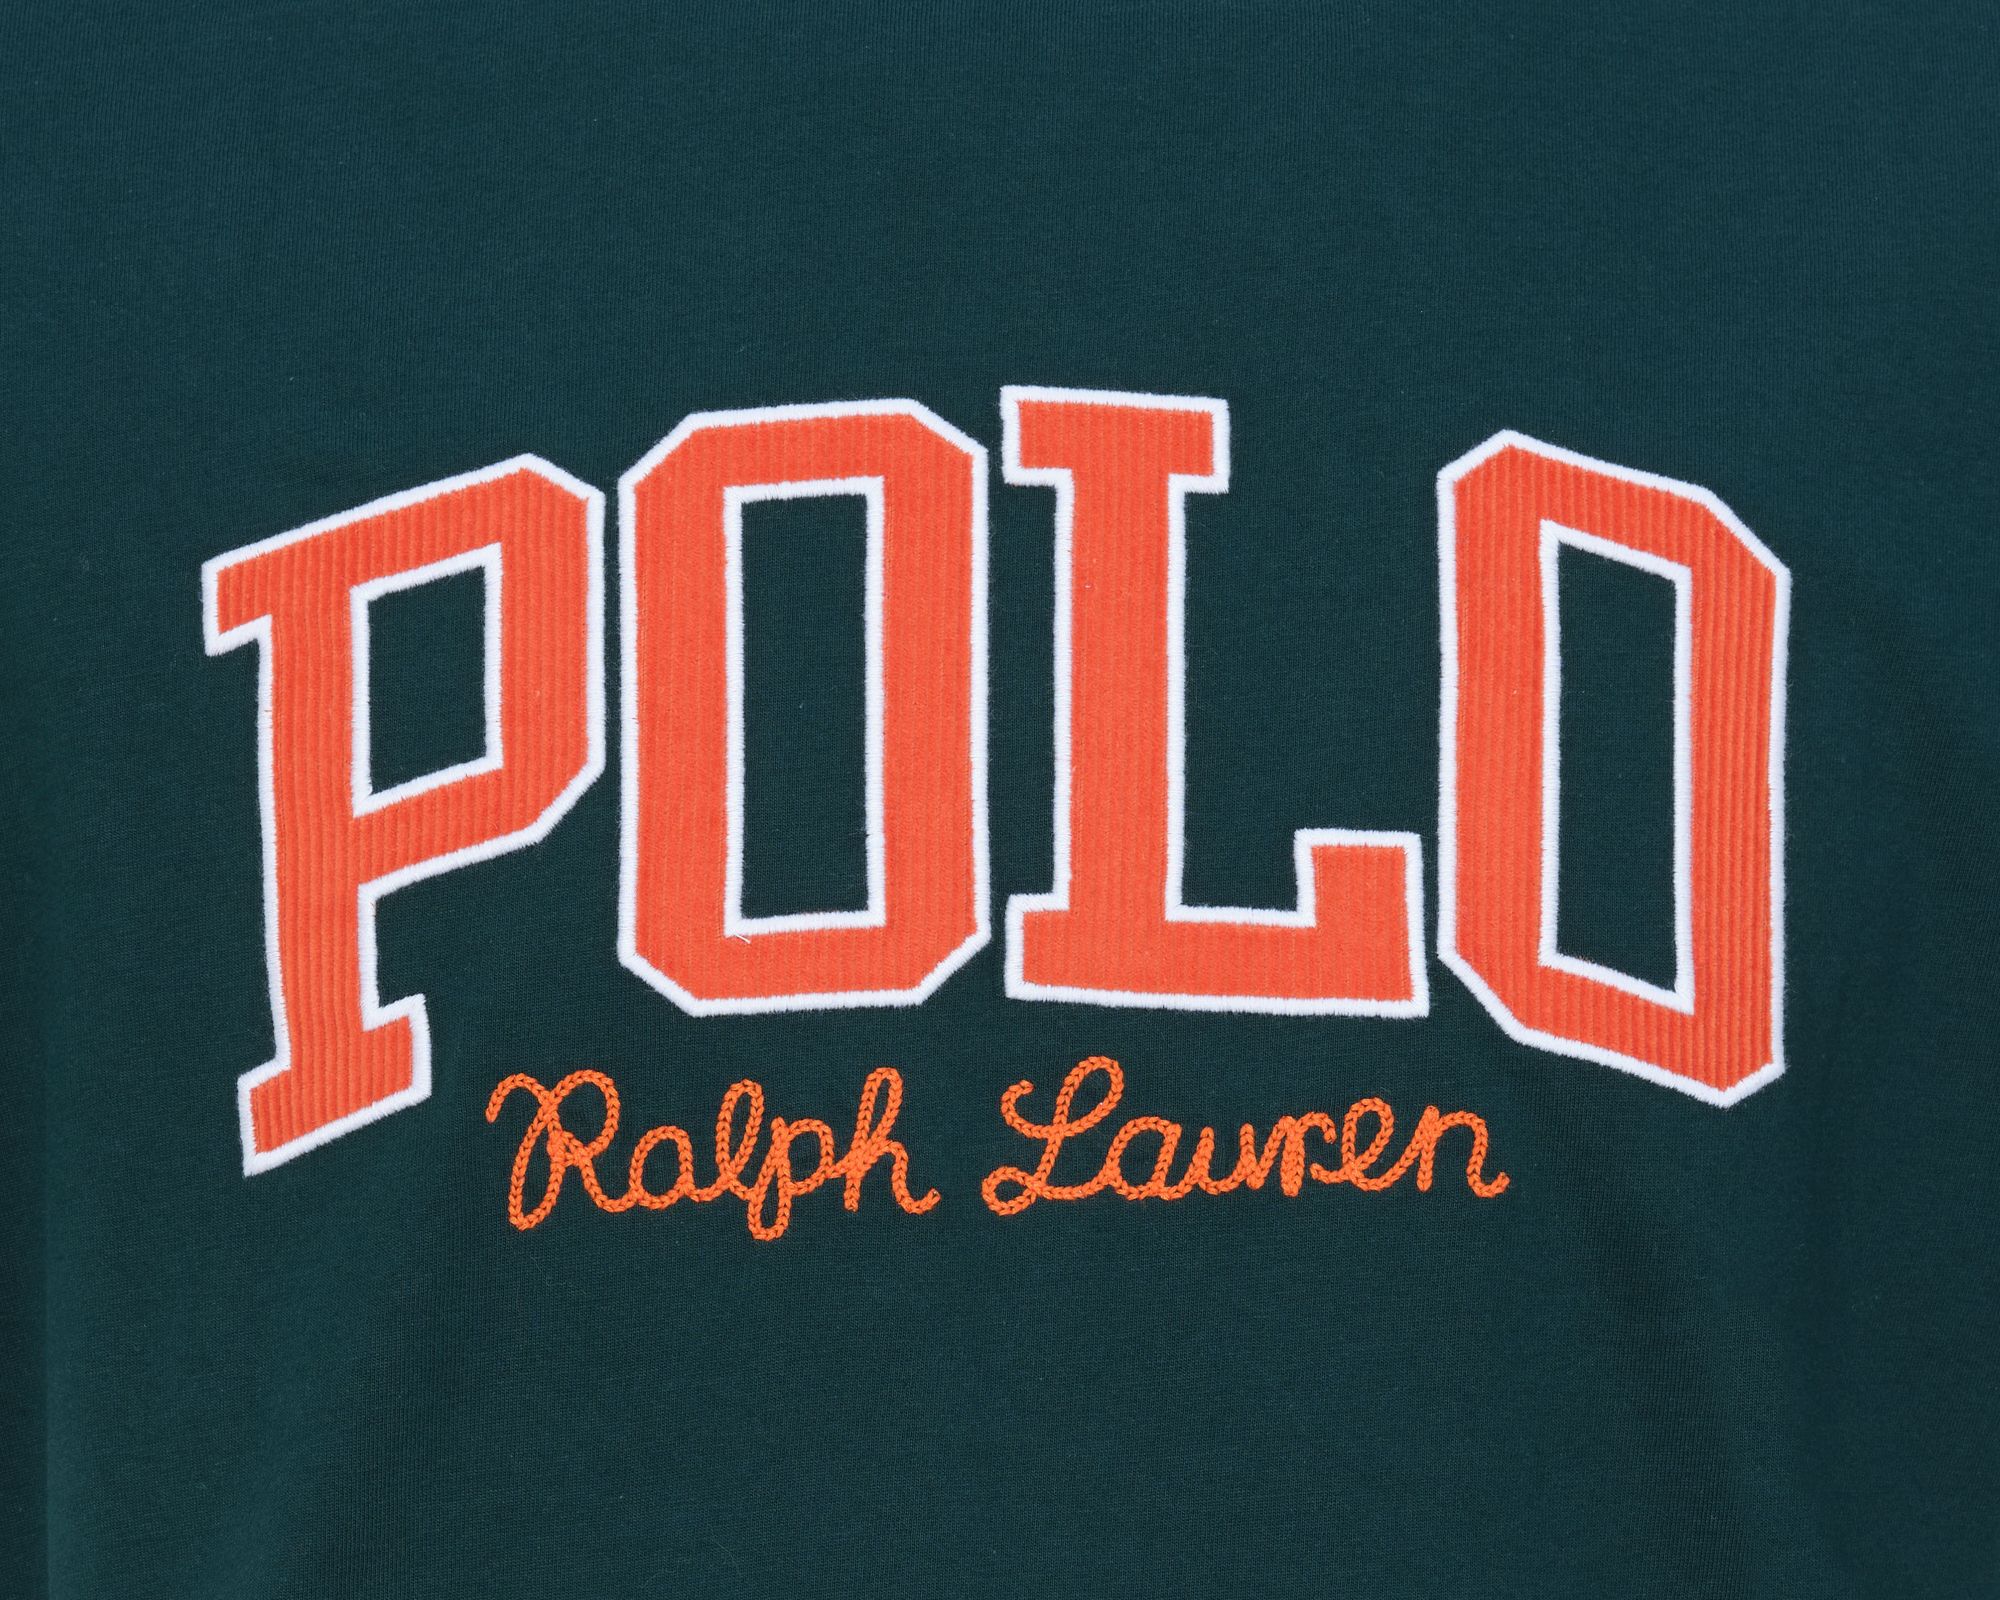 Polo Ralph Lauren T-shirt KM Donker groen 080619-001-L